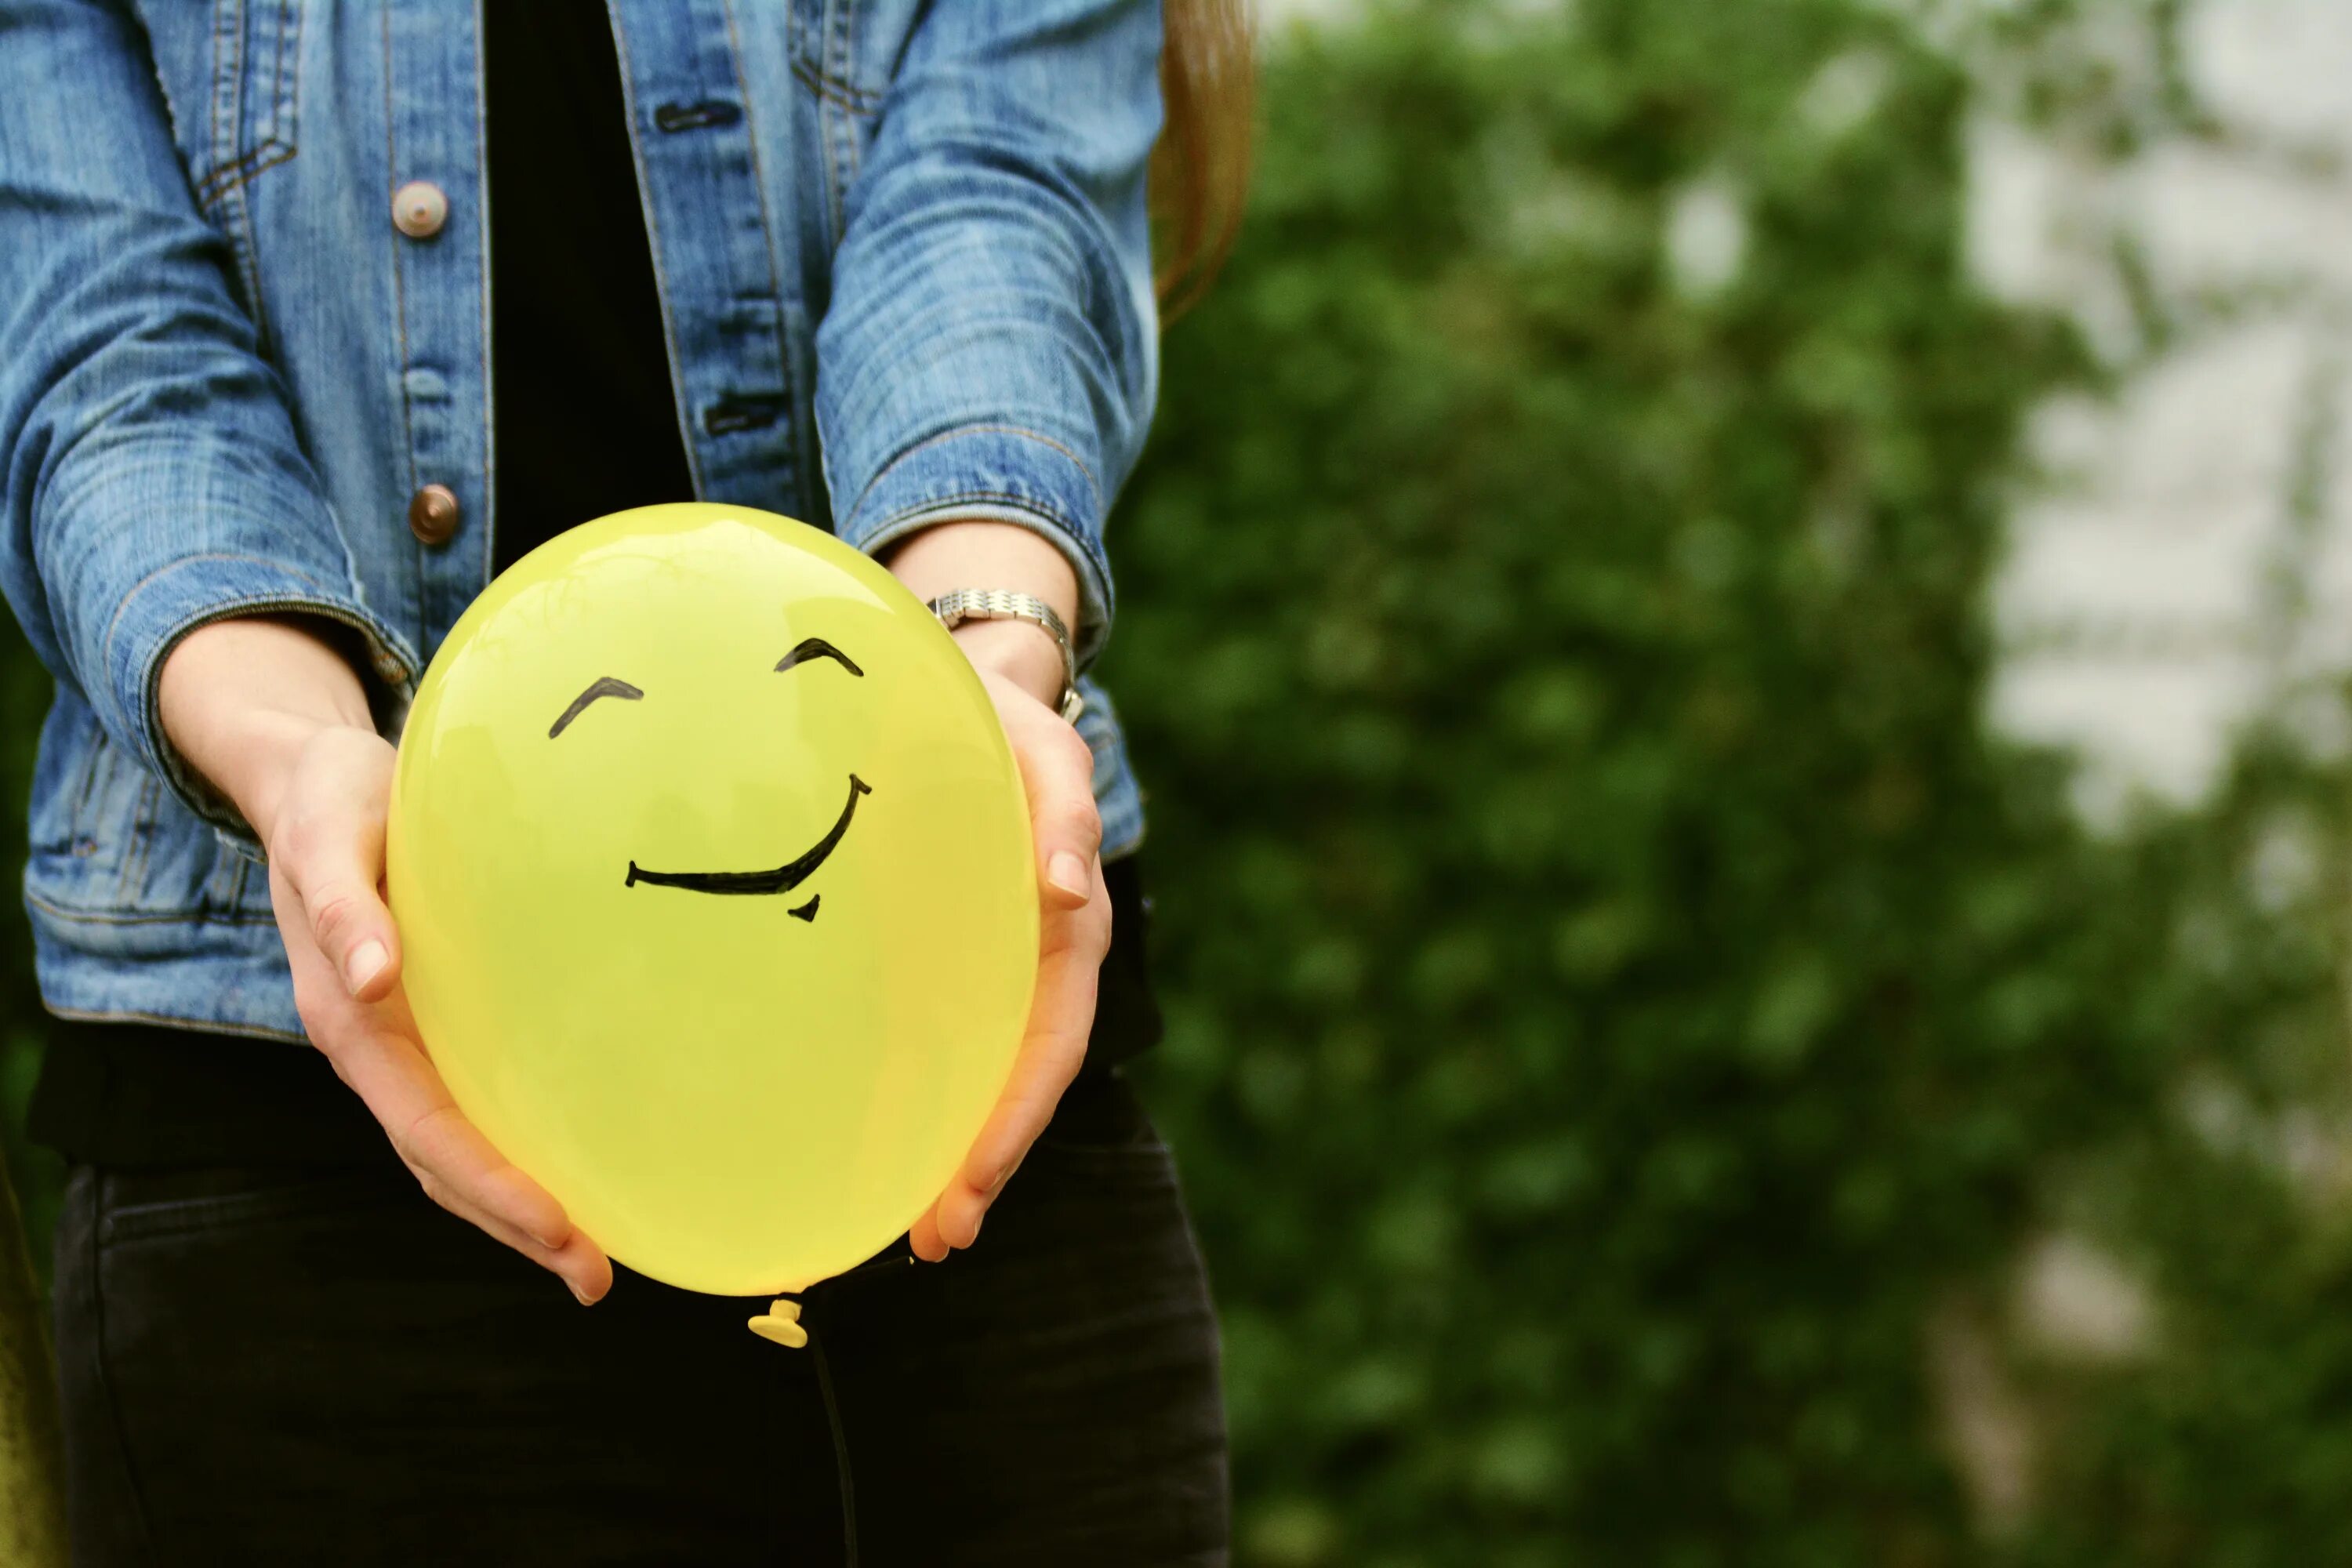 Воздушный шарик в руке. Воздушный шарик с улыбкой. Счастливый человек. Шарик улыбается. Улыбка радости работа